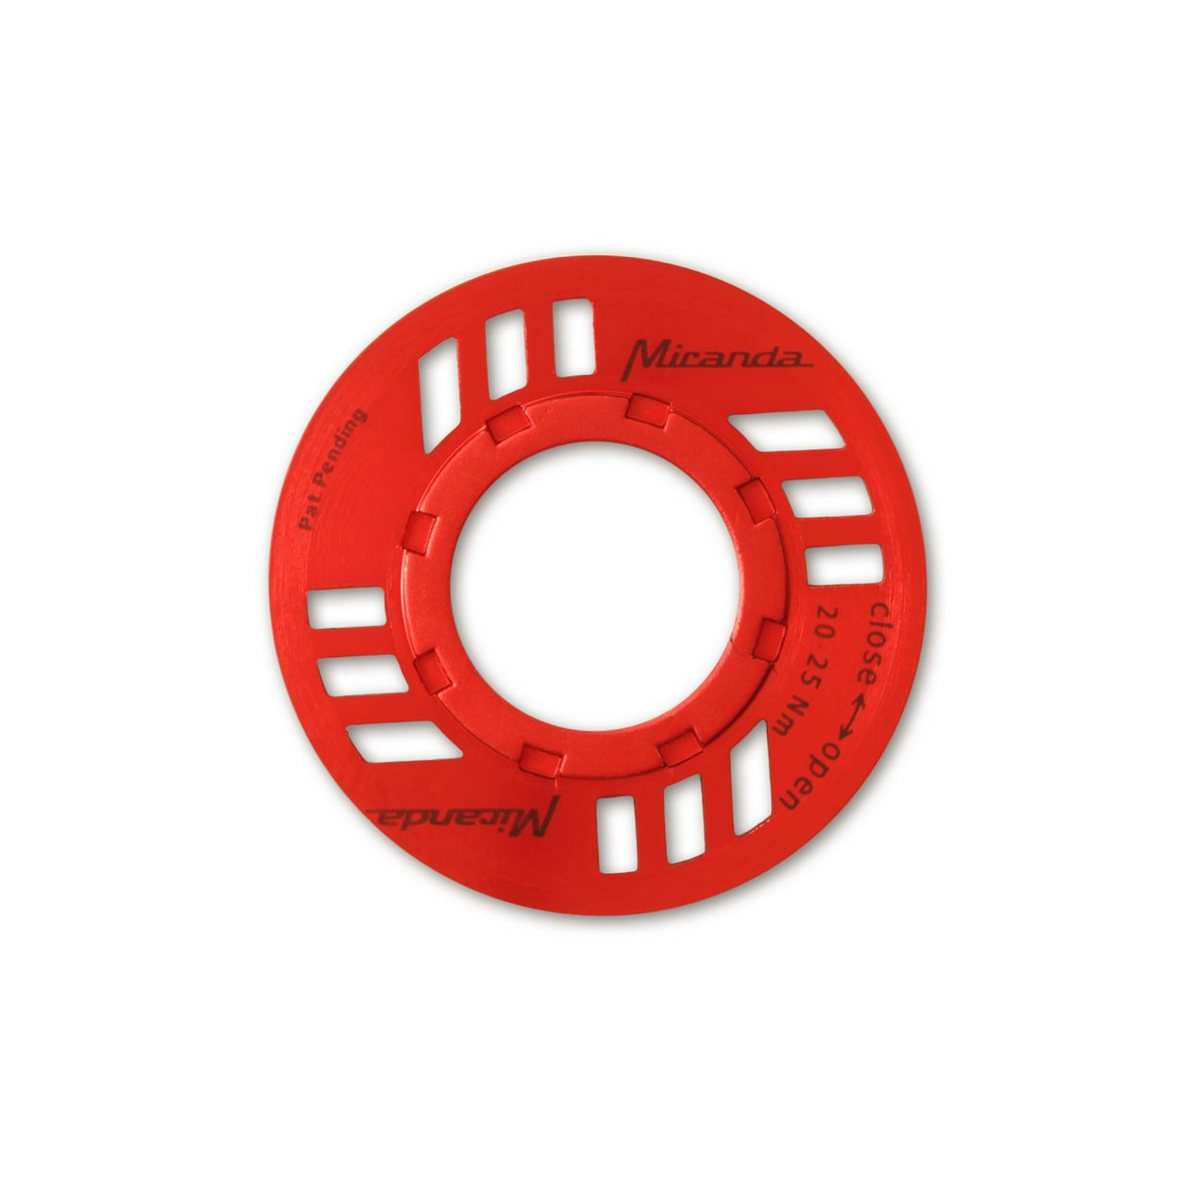 E-Chainguard Nut for eBike Bosch drive unit red